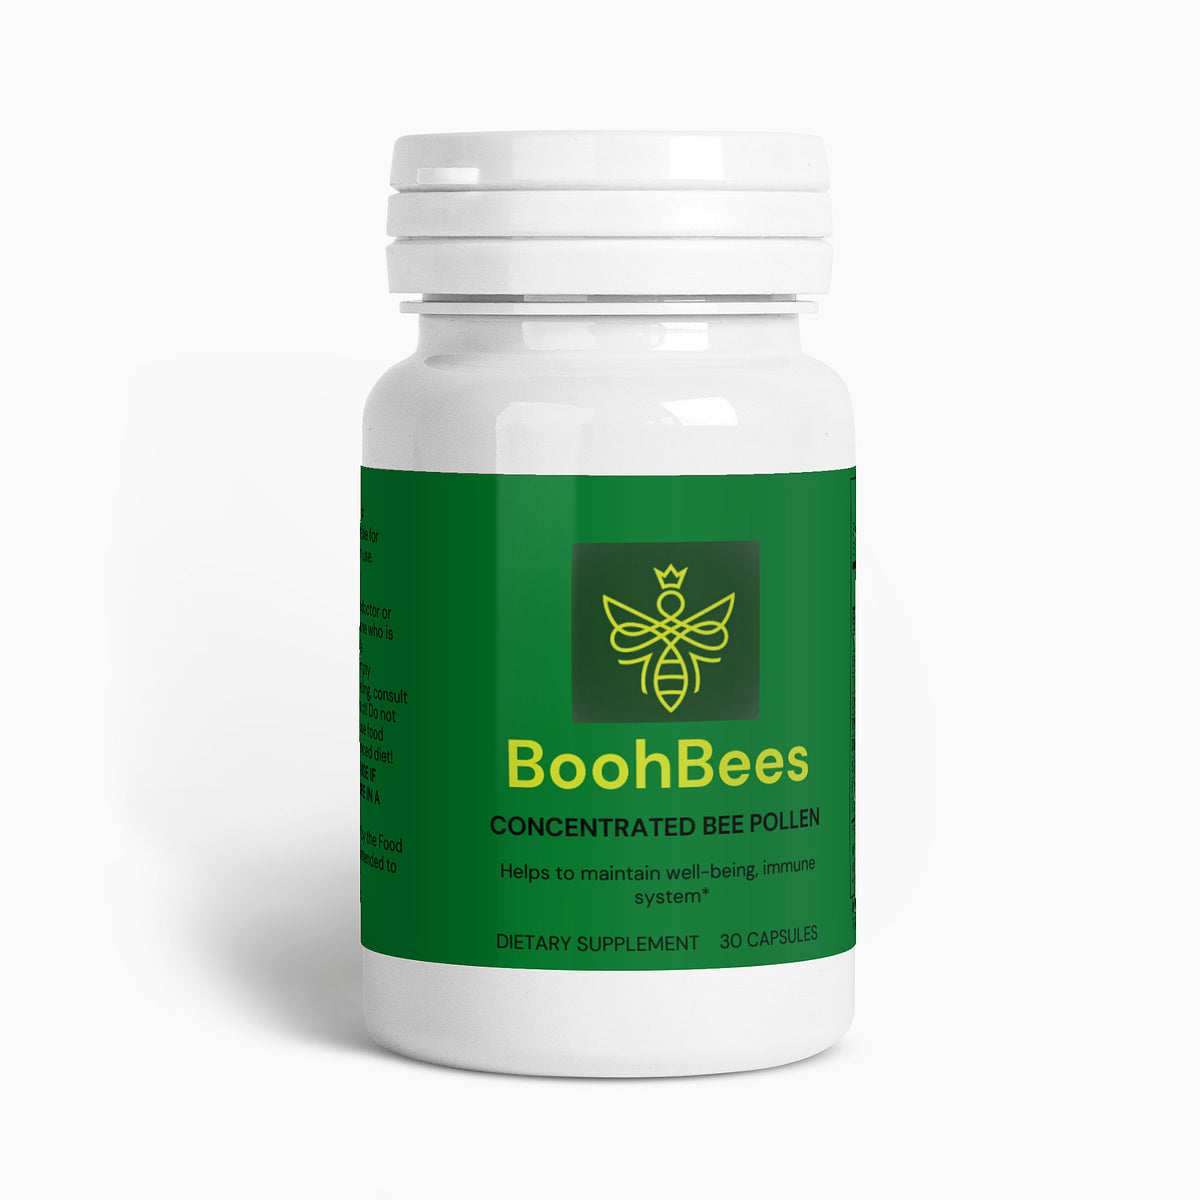 BoohBees Bee pollen